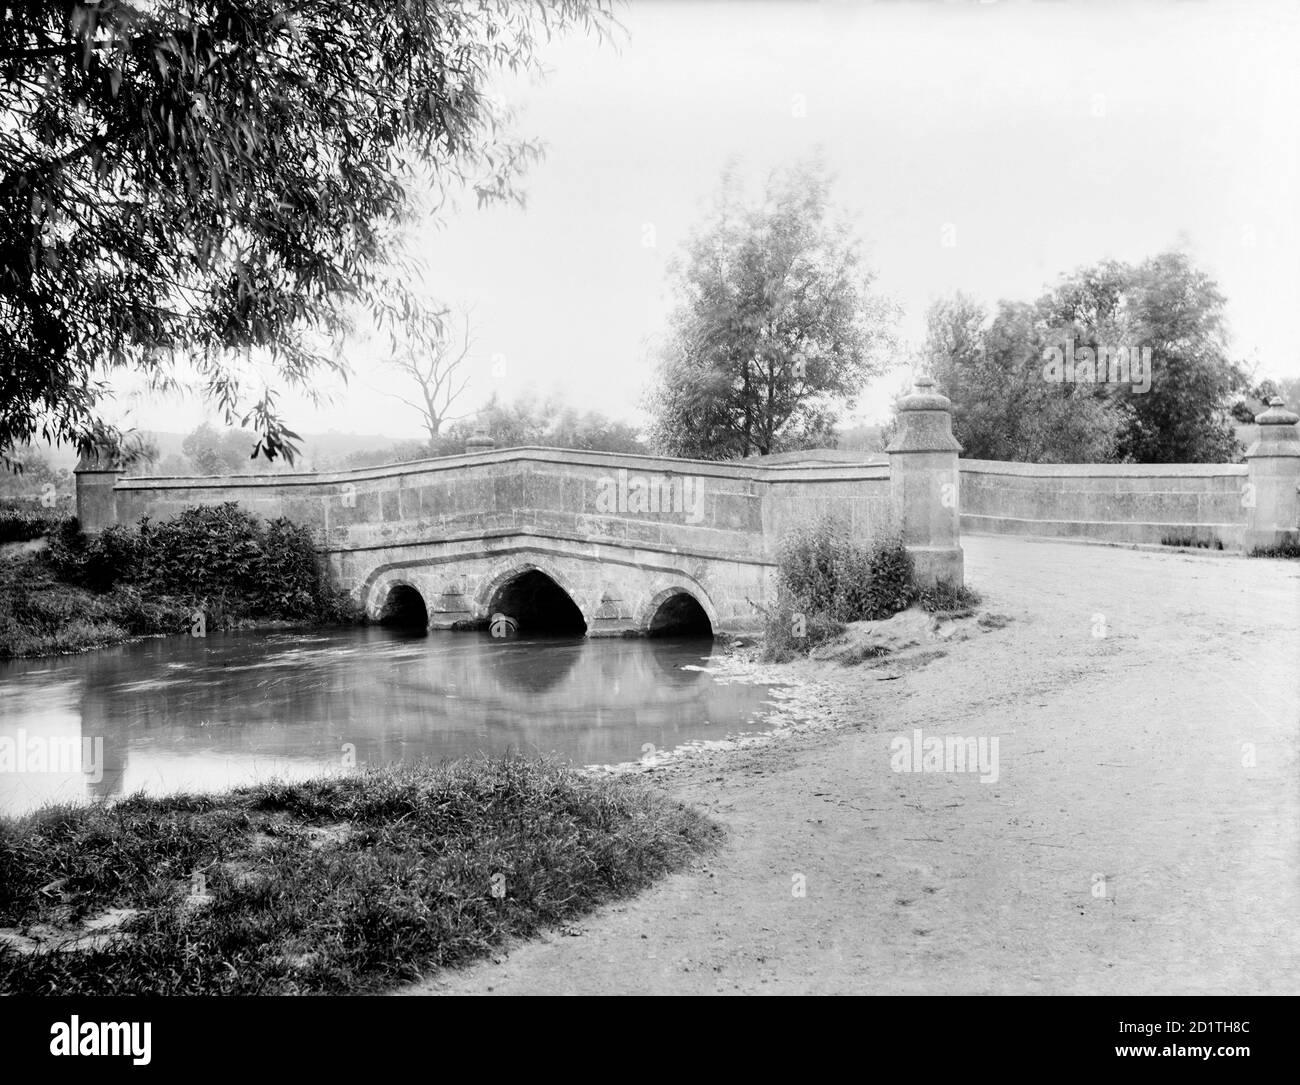 BOURTON BRIDGE, Bourton-on-the-Water, Gloucestershire. Eine malerische Cotswold-Szene, die die Brücke über den Fluss Windrush an einem Kreuzungspunkt zeigt, der seit römischer Zeit in Gebrauch ist. Fotografiert von Henry Taunt im Jahr 1893. Stockfoto